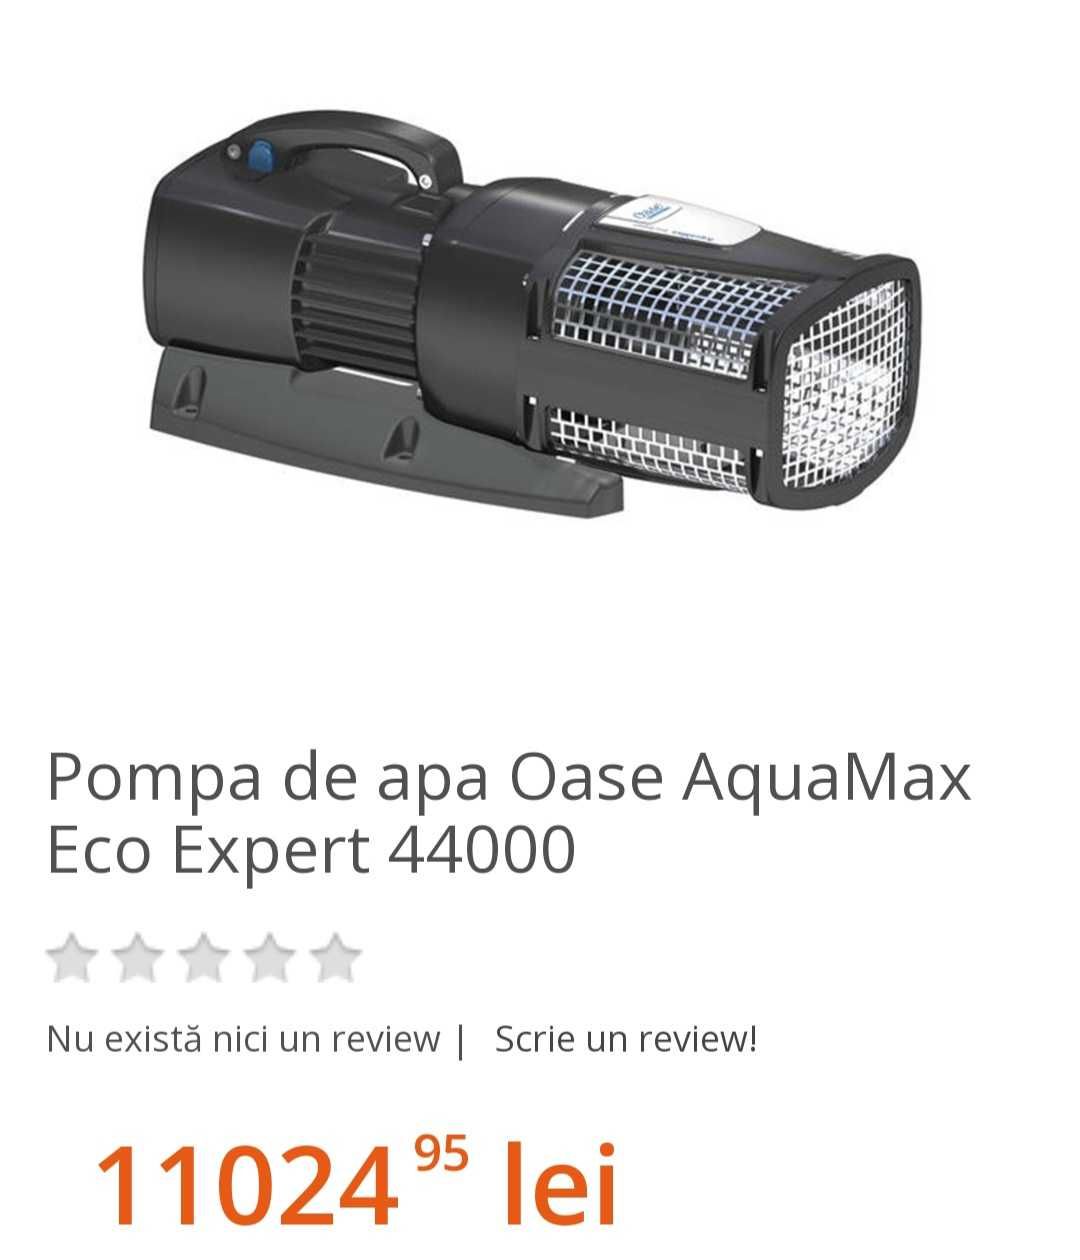 Pompa de apa Oasa AquaMax Eco Expert 44000